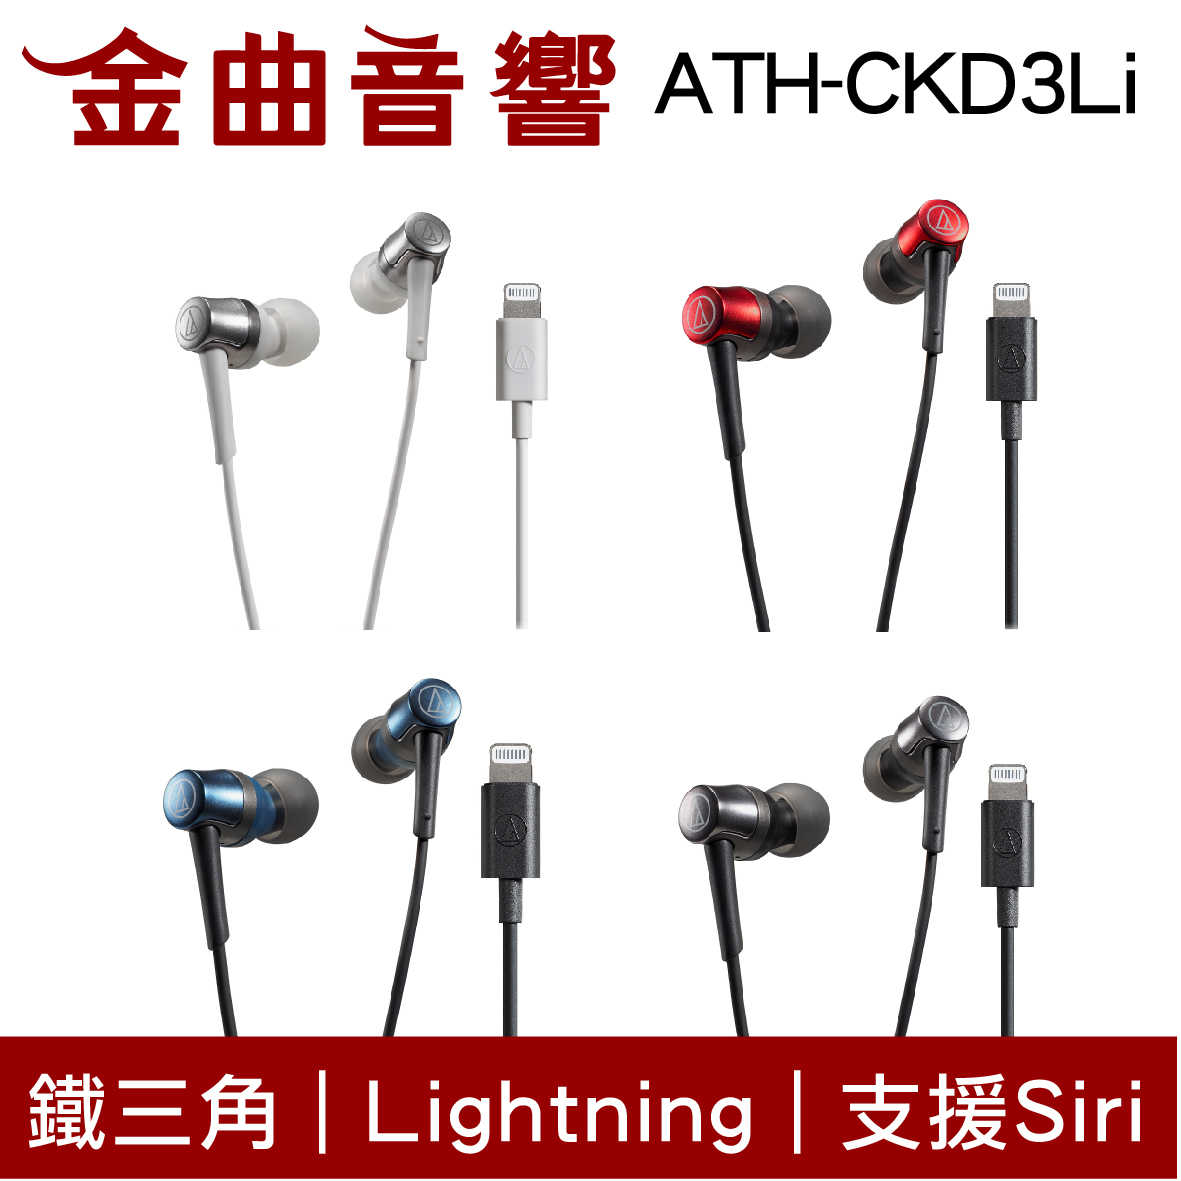 鐵三角 ATH-CKD3Li 藍 Lightning 支援Siri 線控 耳塞式 耳機 | 金曲音響